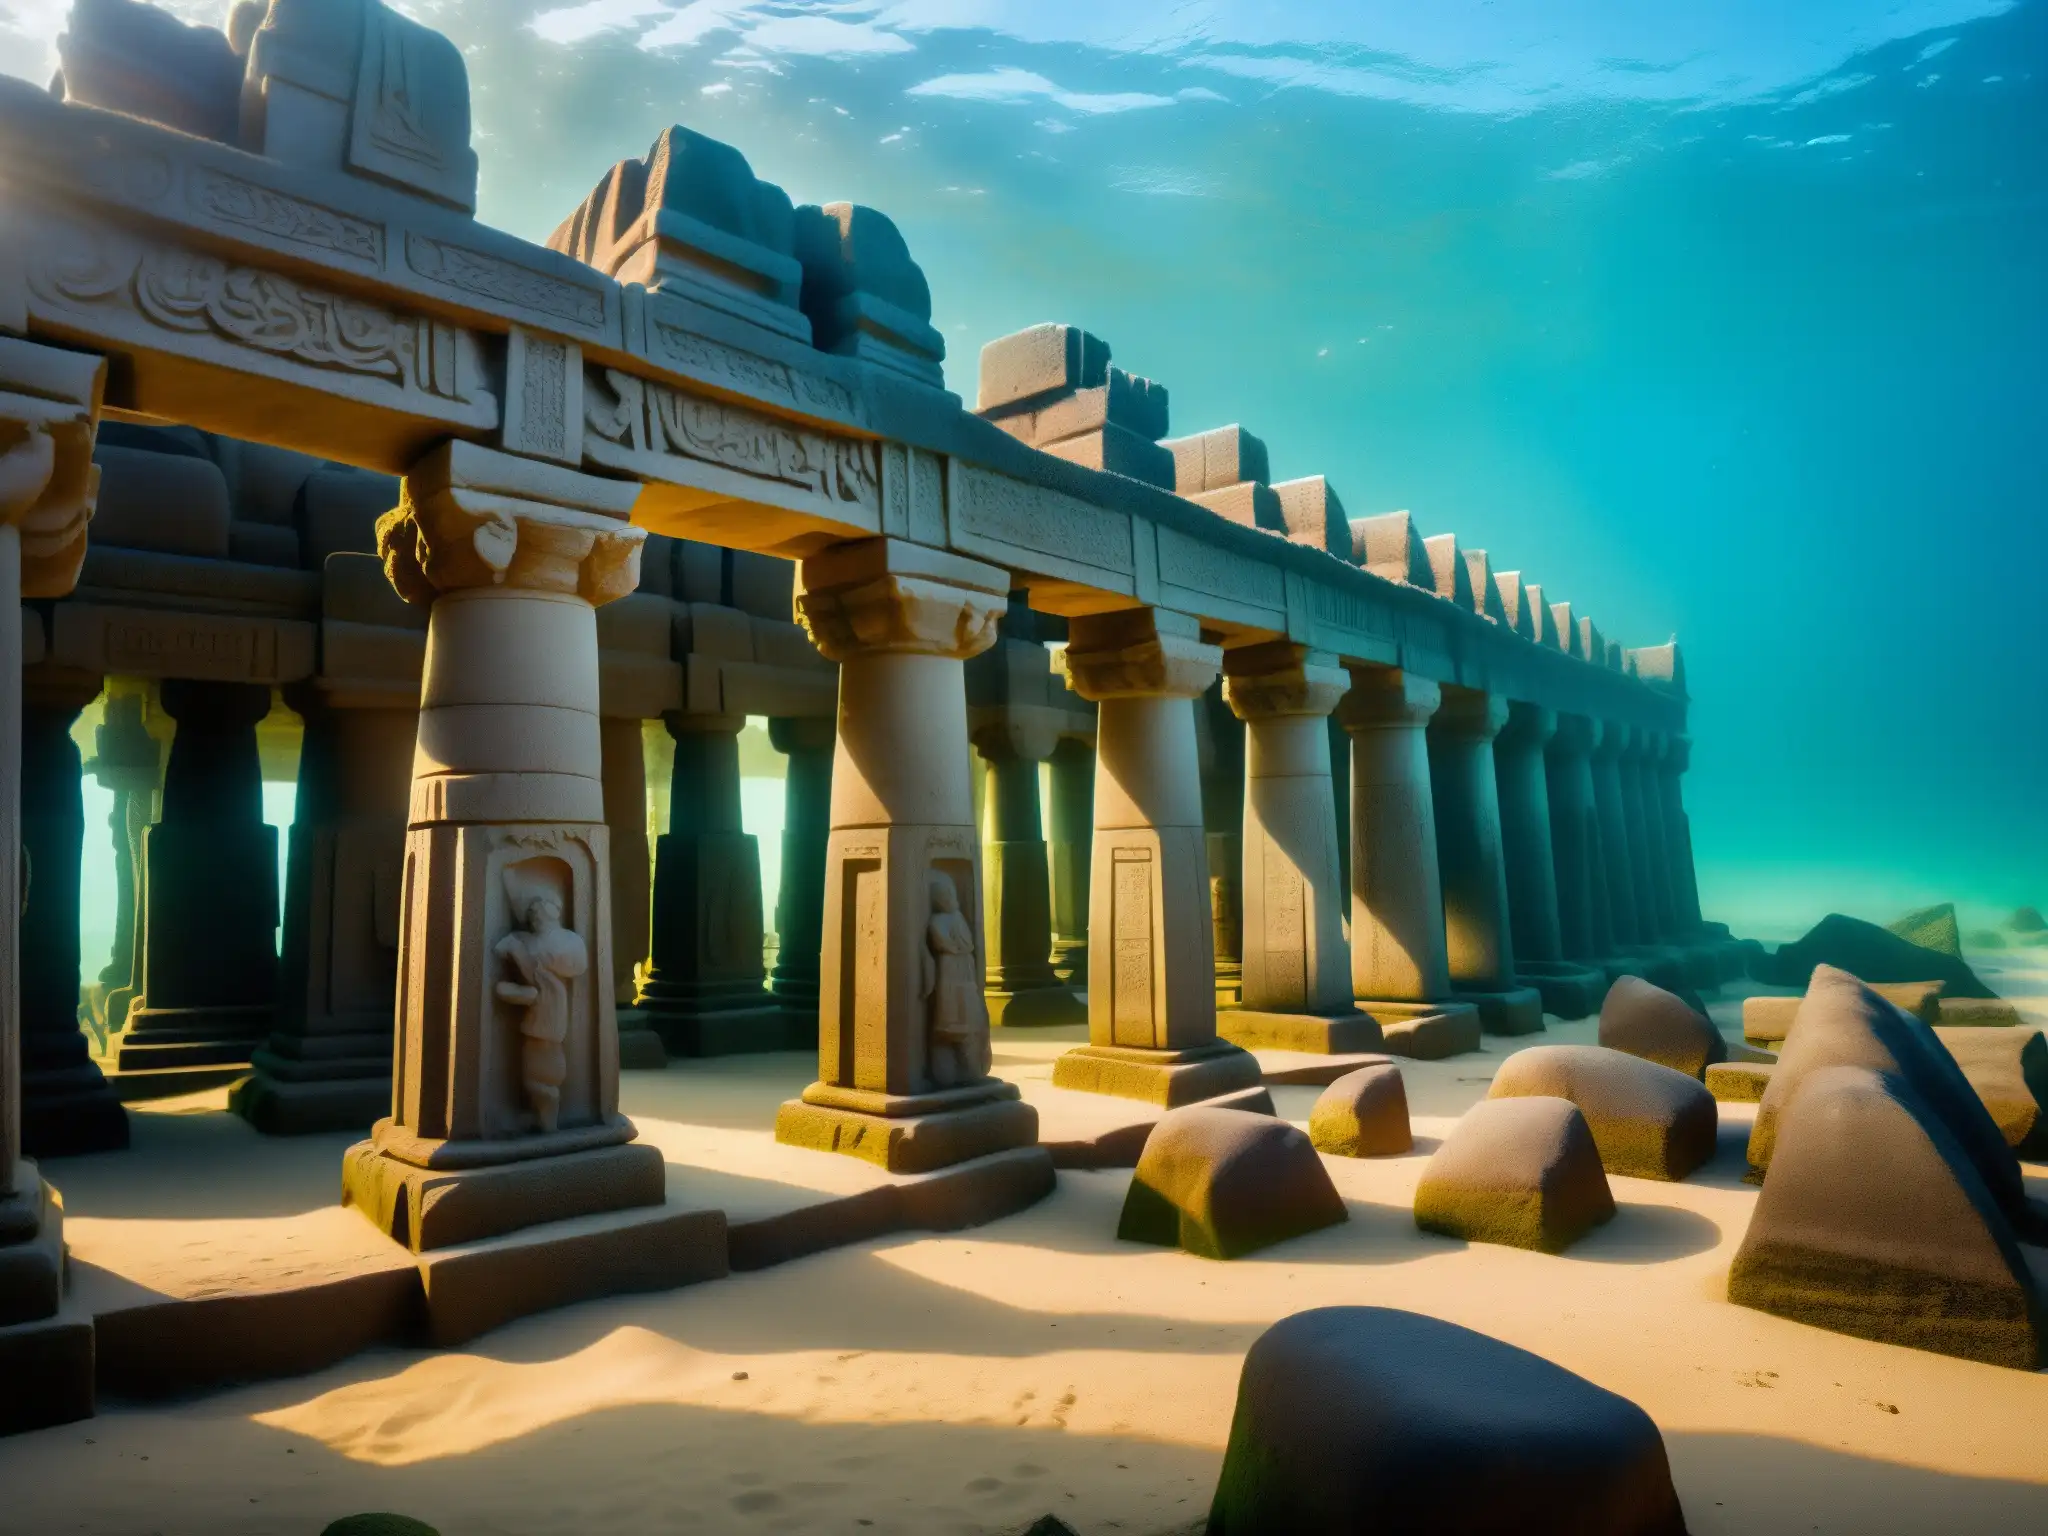 Imagen impactante de los templos hundidos de Mahabalipuram, revelando la grandeza de una civilización perdida